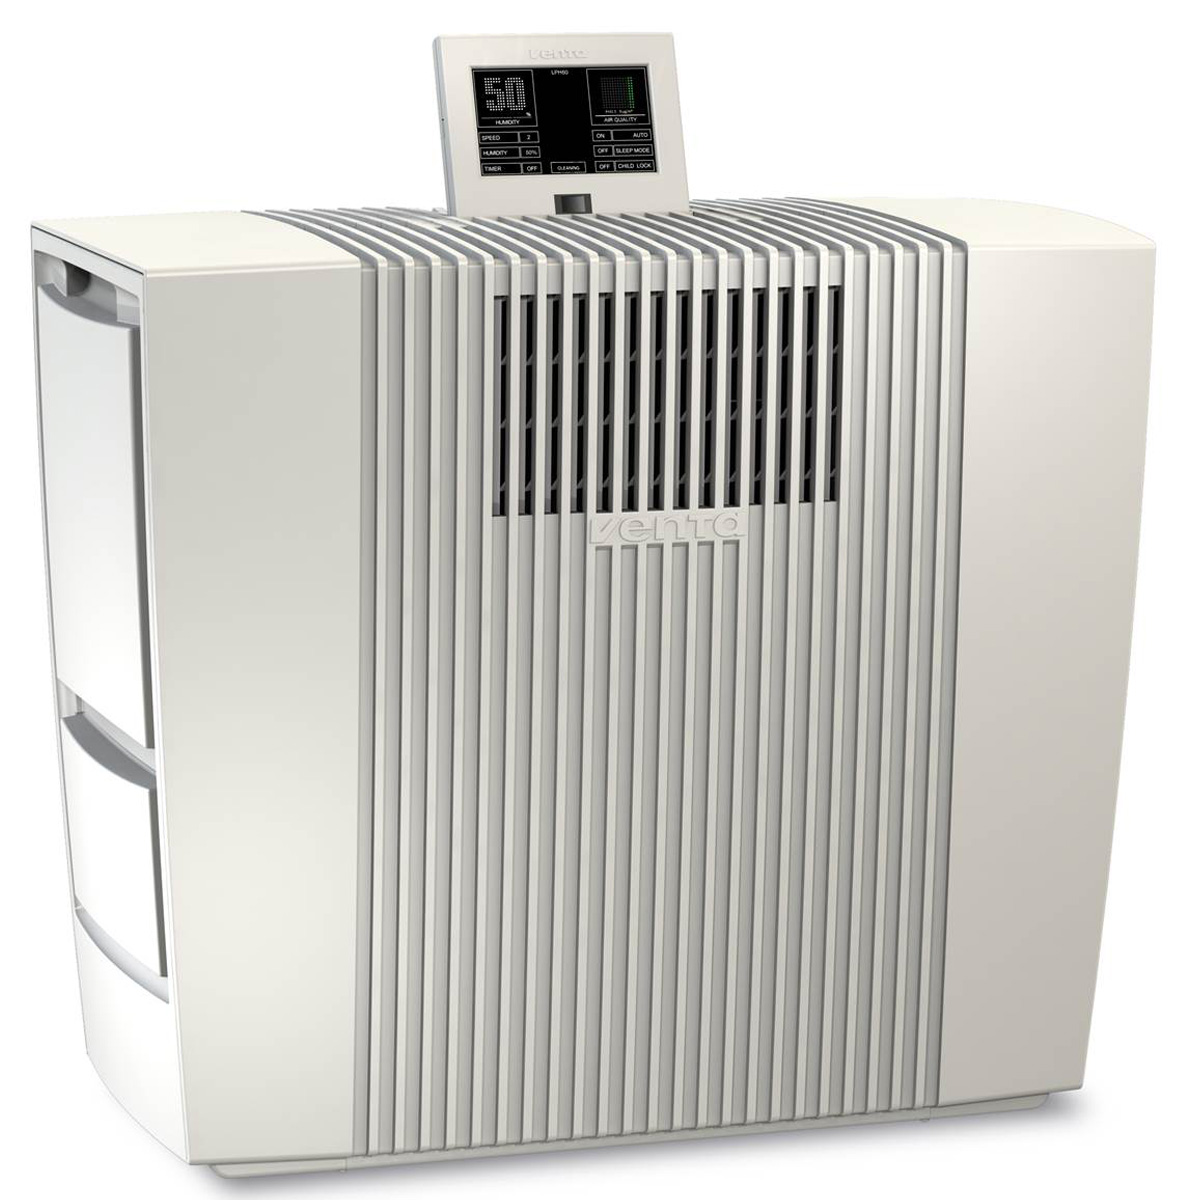 Очиститель-увлажнитель воздуха Venta LPH60 WiFi белый